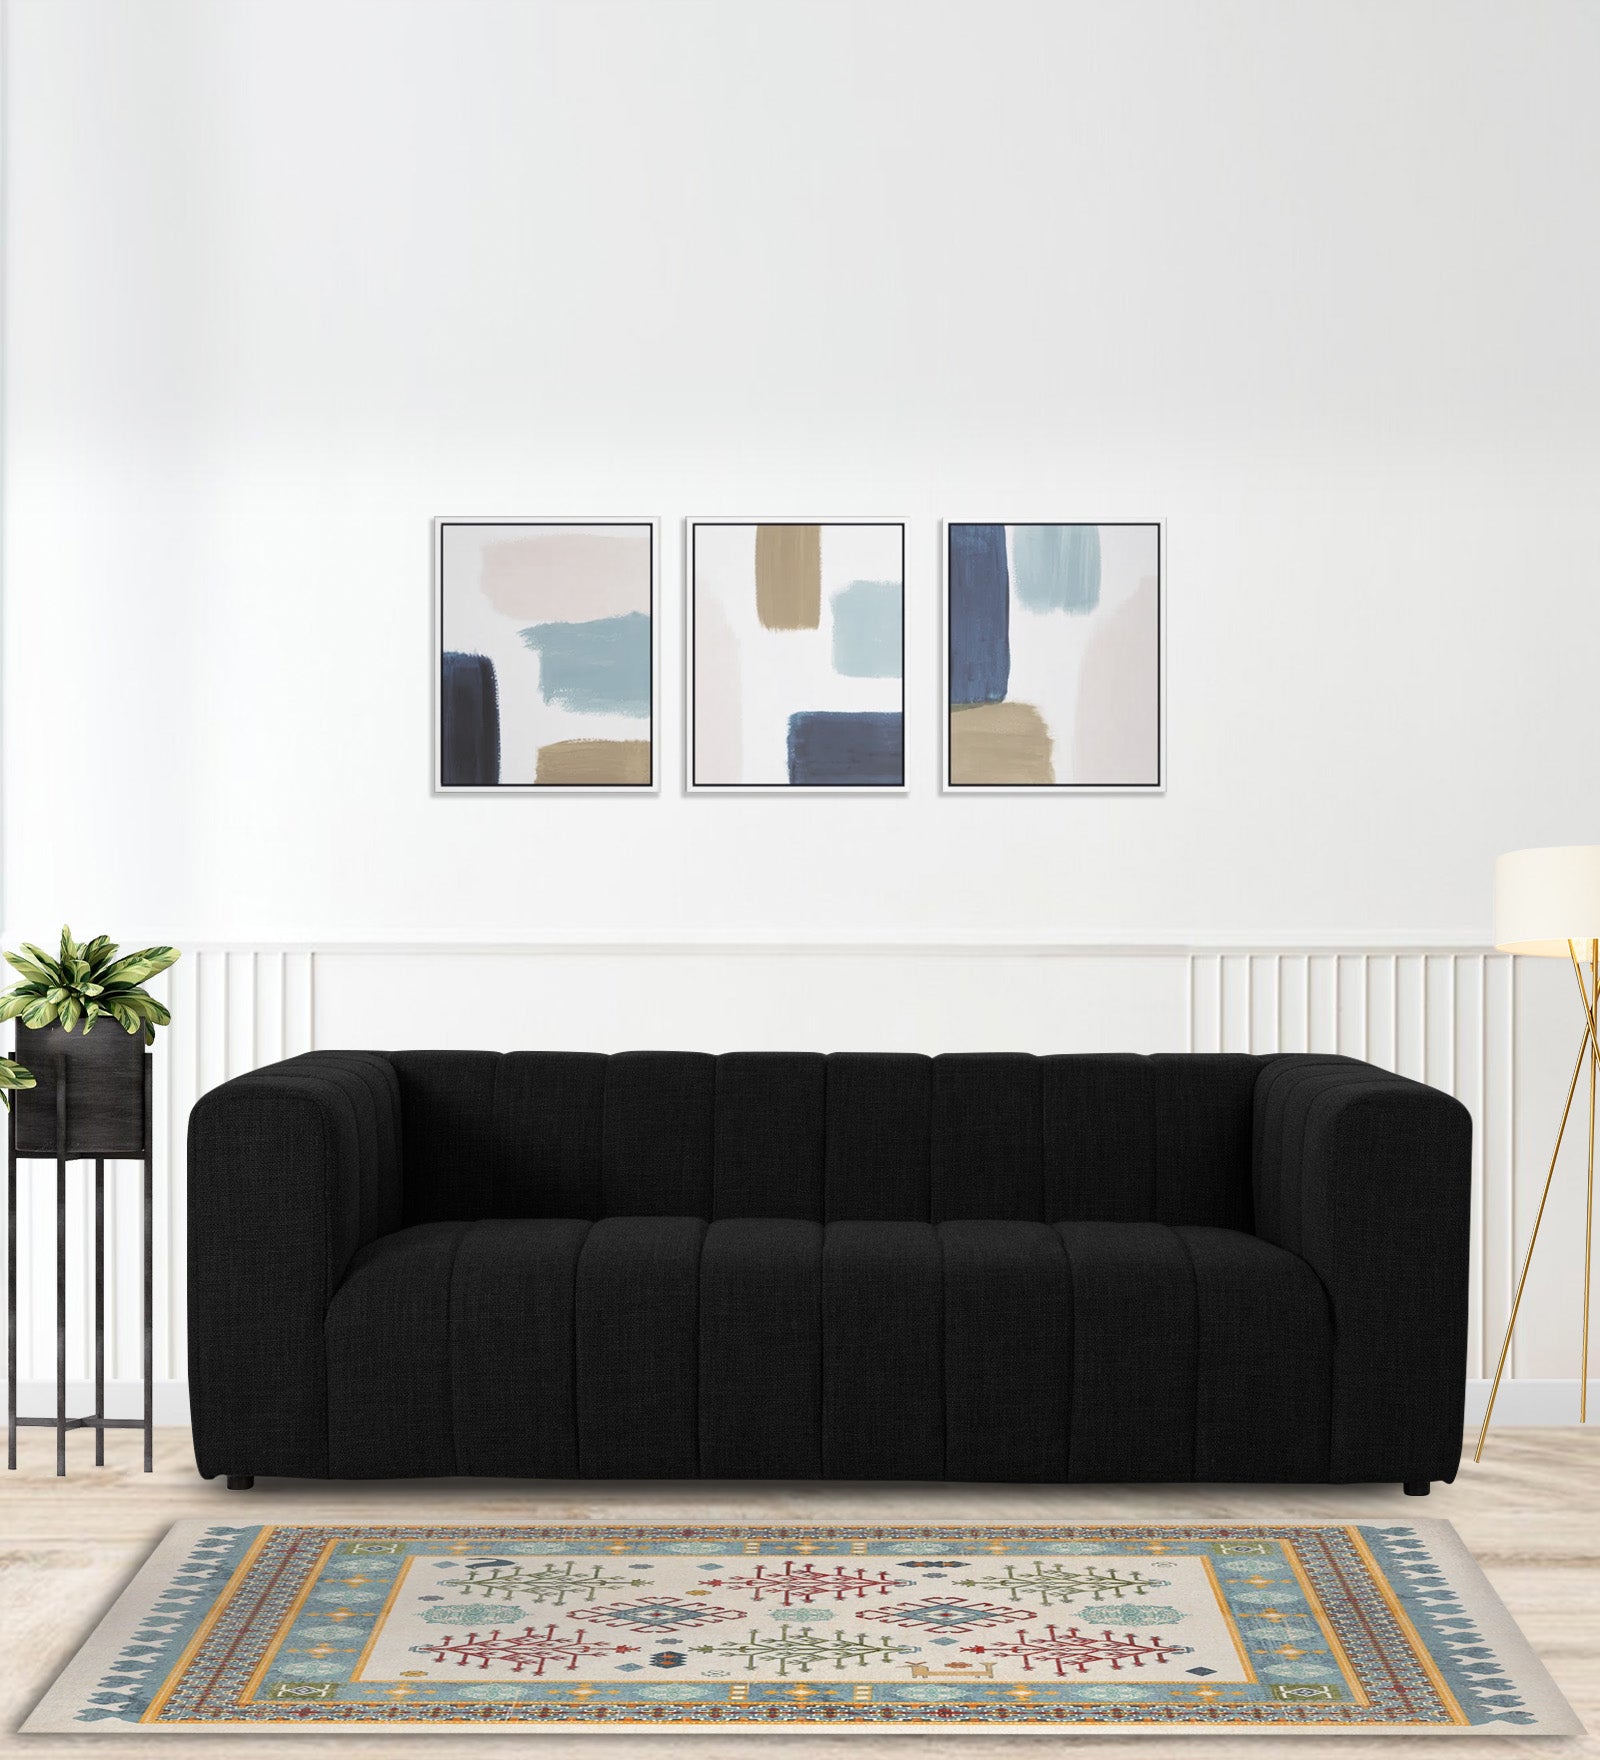 Lara Fabric 3 Seater Sofa in Zed Black Colour